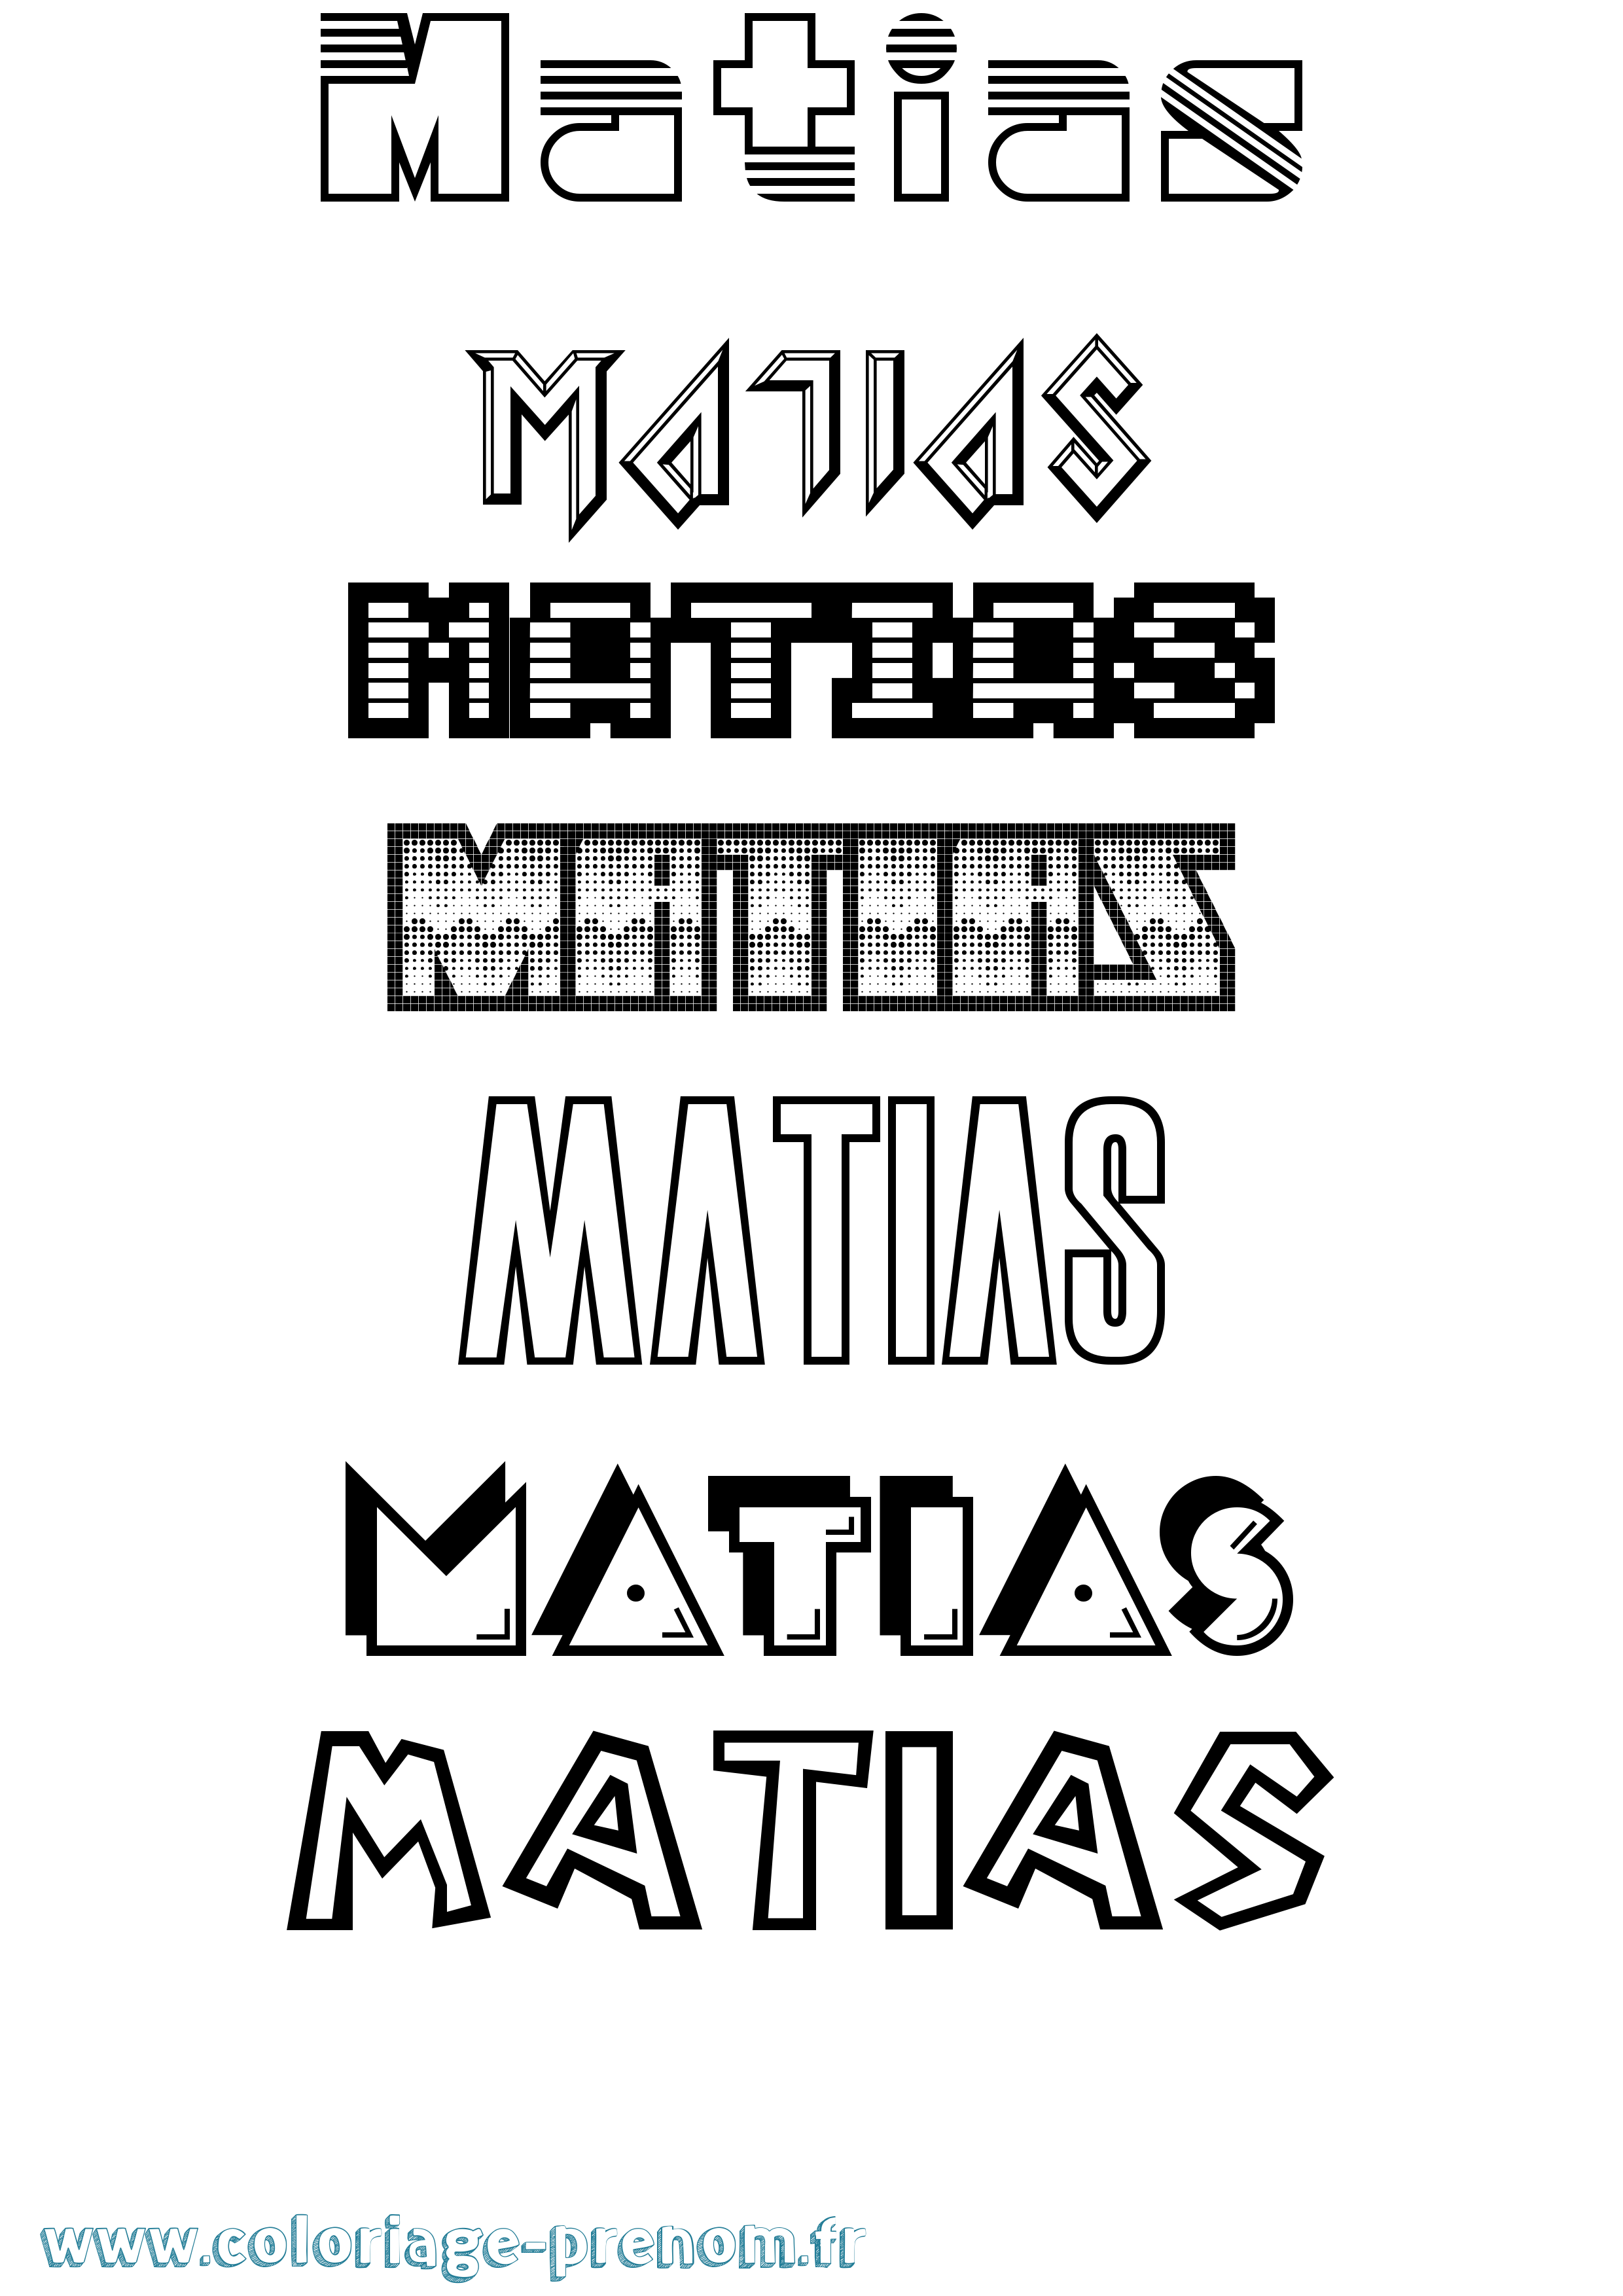 Coloriage prénom Matias